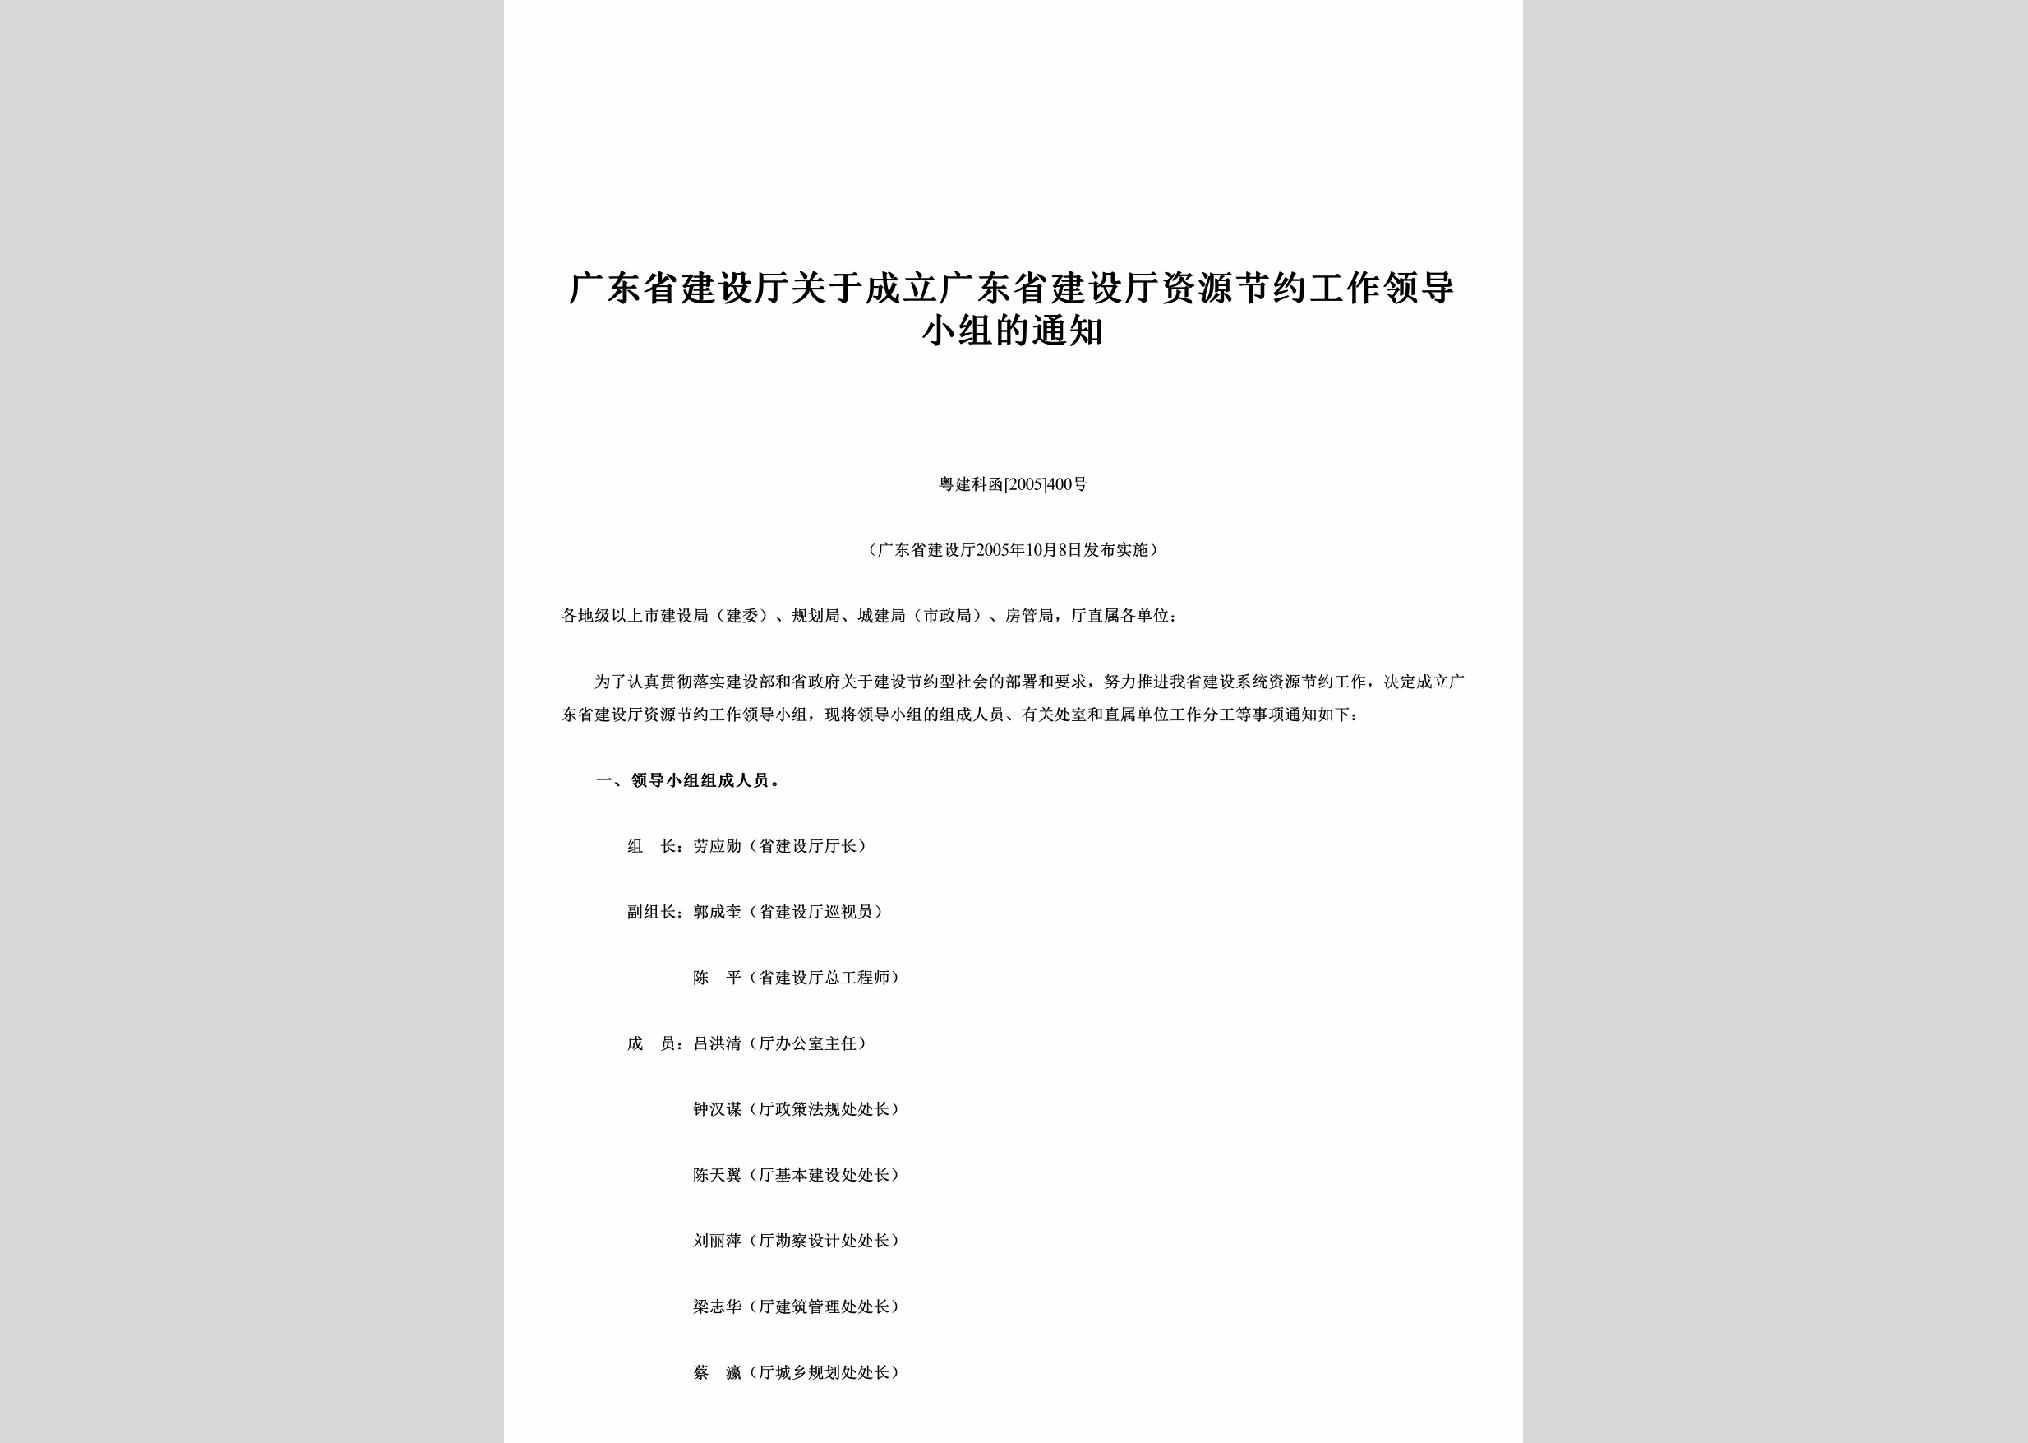 粤建科函[2005]400号：关于成立广东省建设厅资源节约工作领导小组的通知